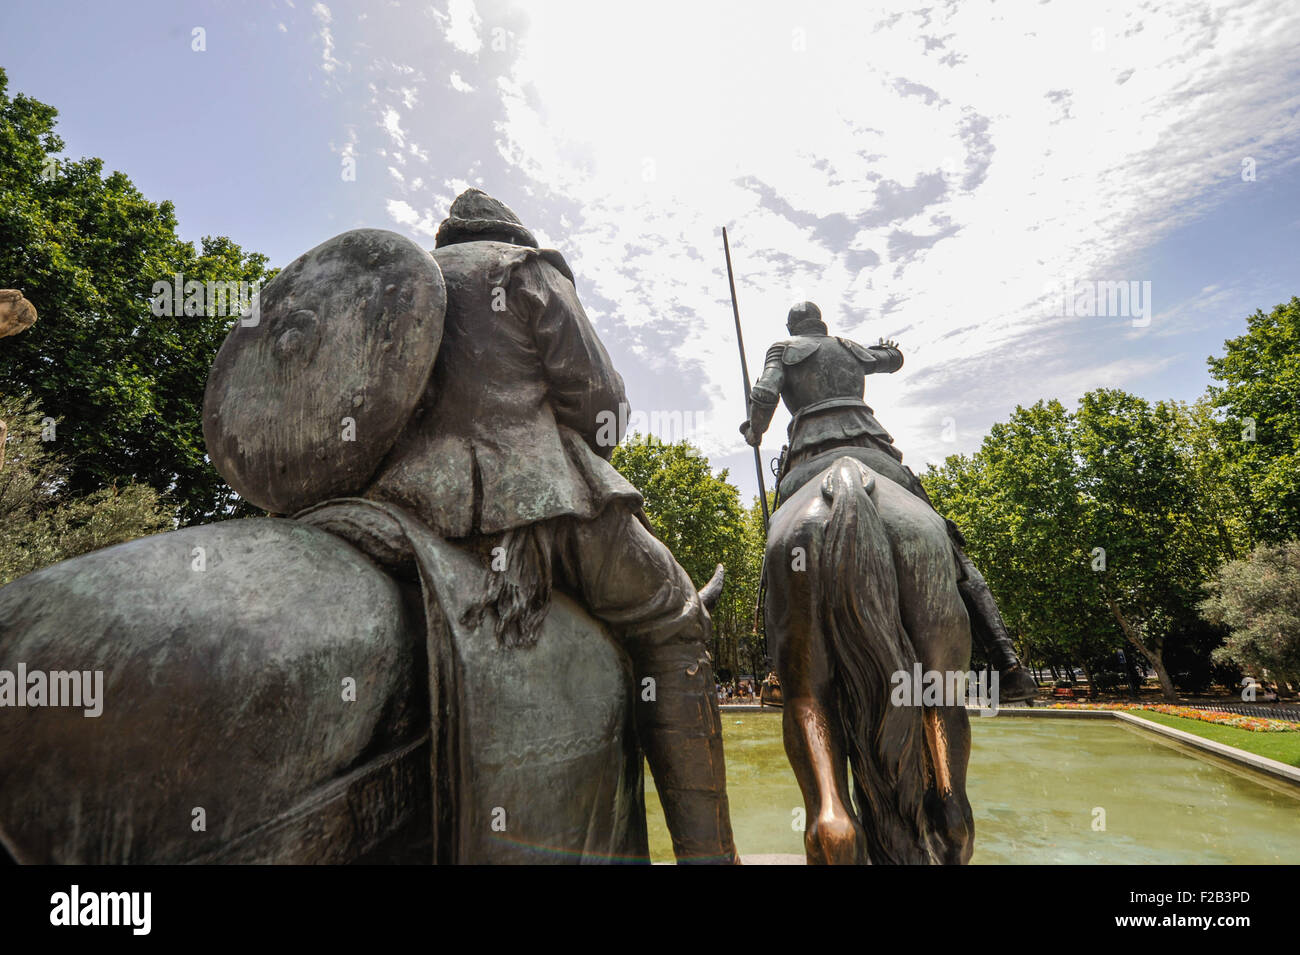 La statua di Don Chisciotte e Sancho in Plaza de España, Madrid- la estatua de Don Quijote y Sancho en Plaza de España, Madrid Foto Stock